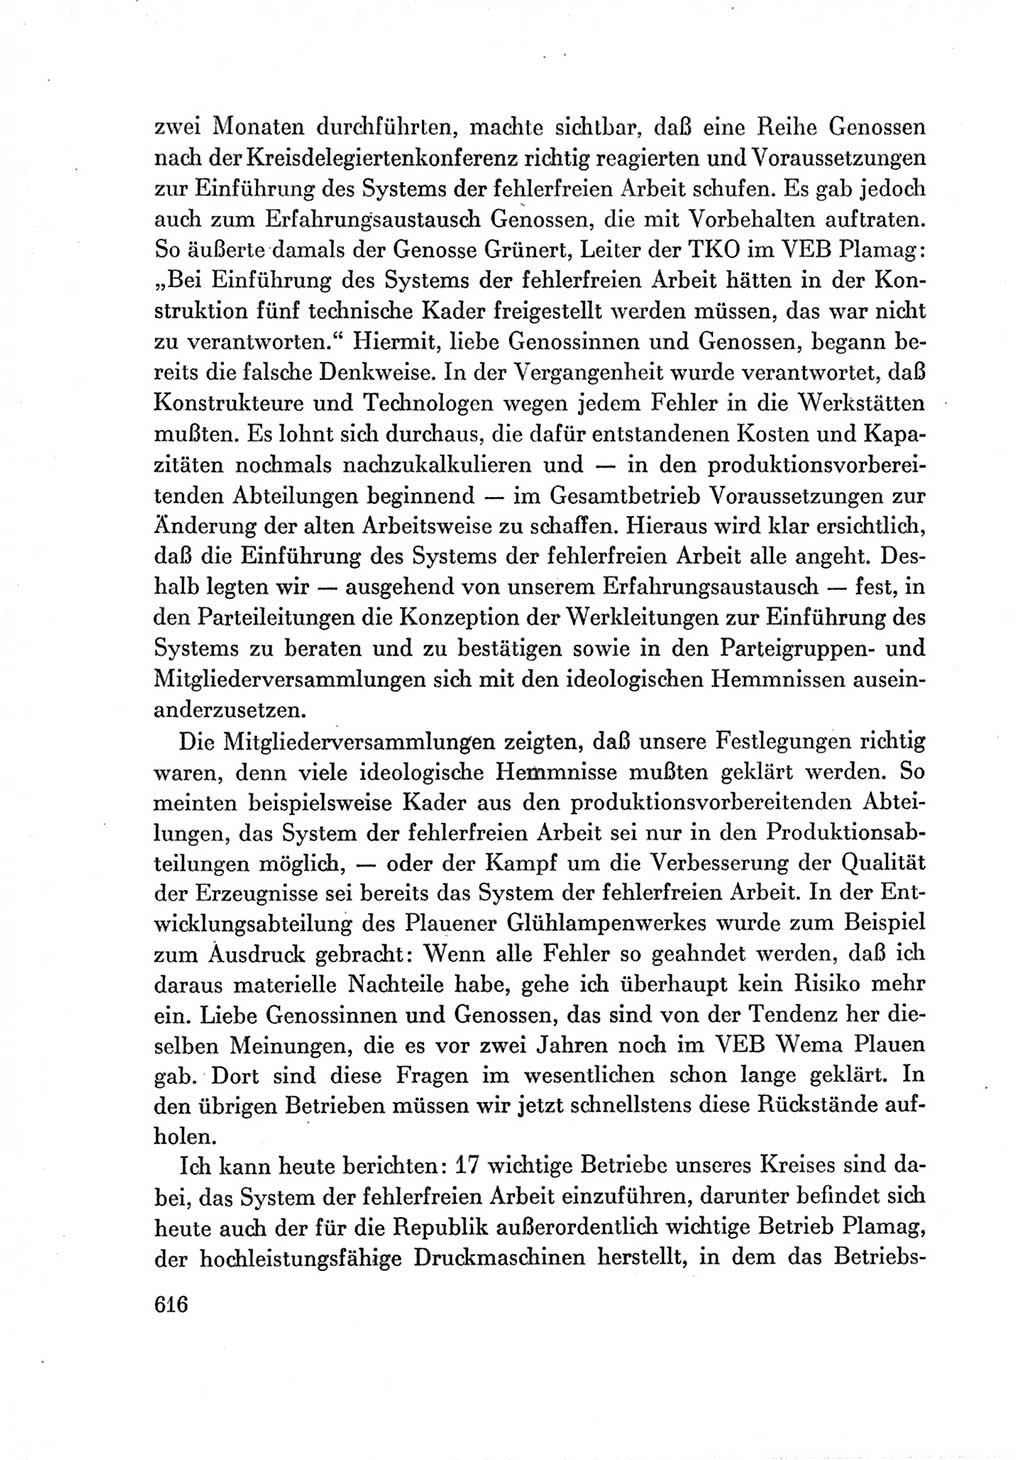 Protokoll der Verhandlungen des Ⅶ. Parteitages der Sozialistischen Einheitspartei Deutschlands (SED) [Deutsche Demokratische Republik (DDR)] 1967, Band Ⅲ, Seite 616 (Prot. Verh. Ⅶ. PT SED DDR 1967, Bd. Ⅲ, S. 616)